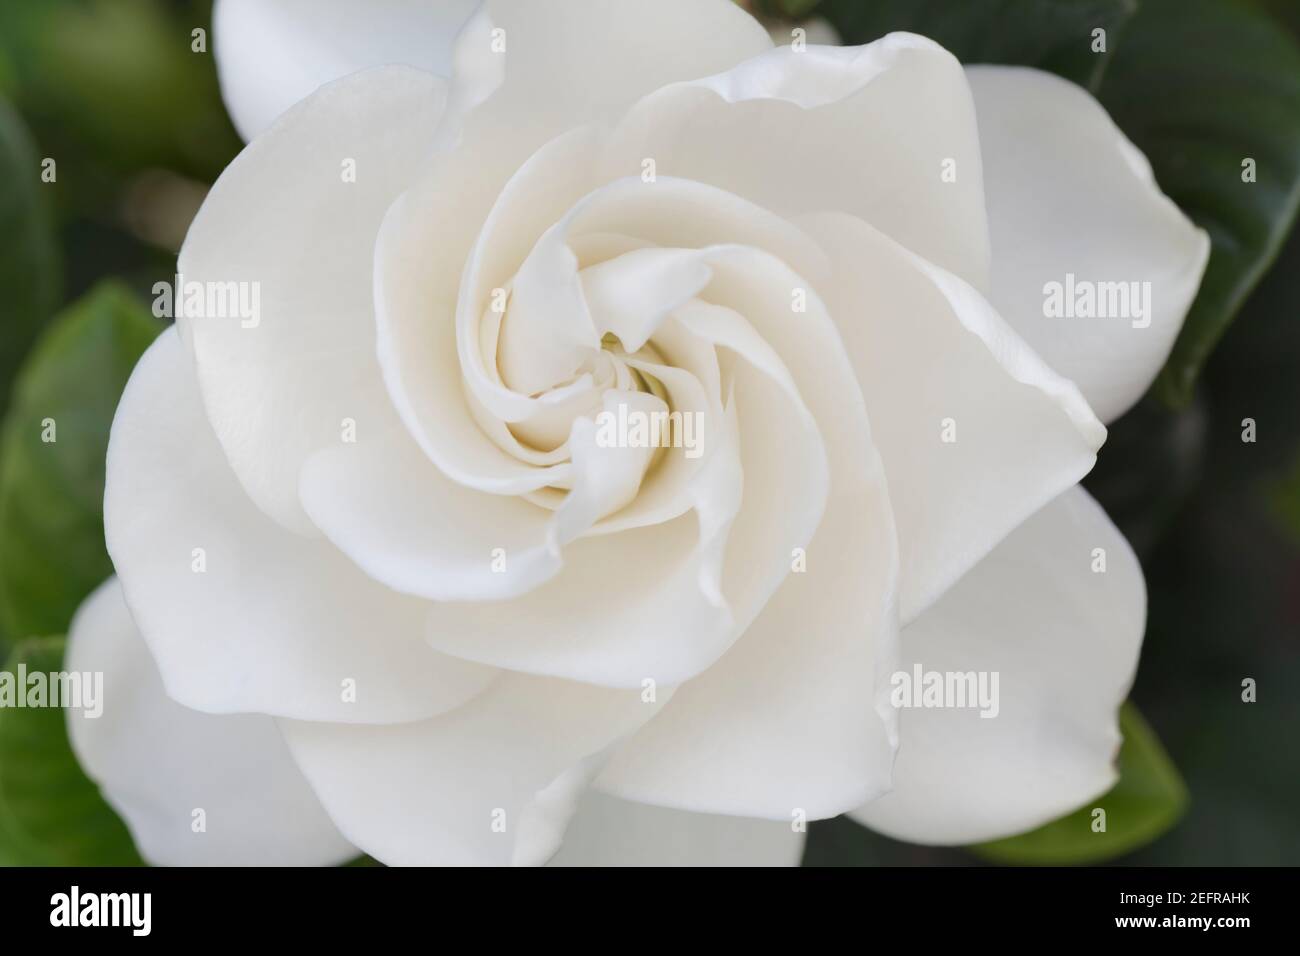 Gardenia jasminoides, gros plan de fleur blanche sur une plante Banque D'Images